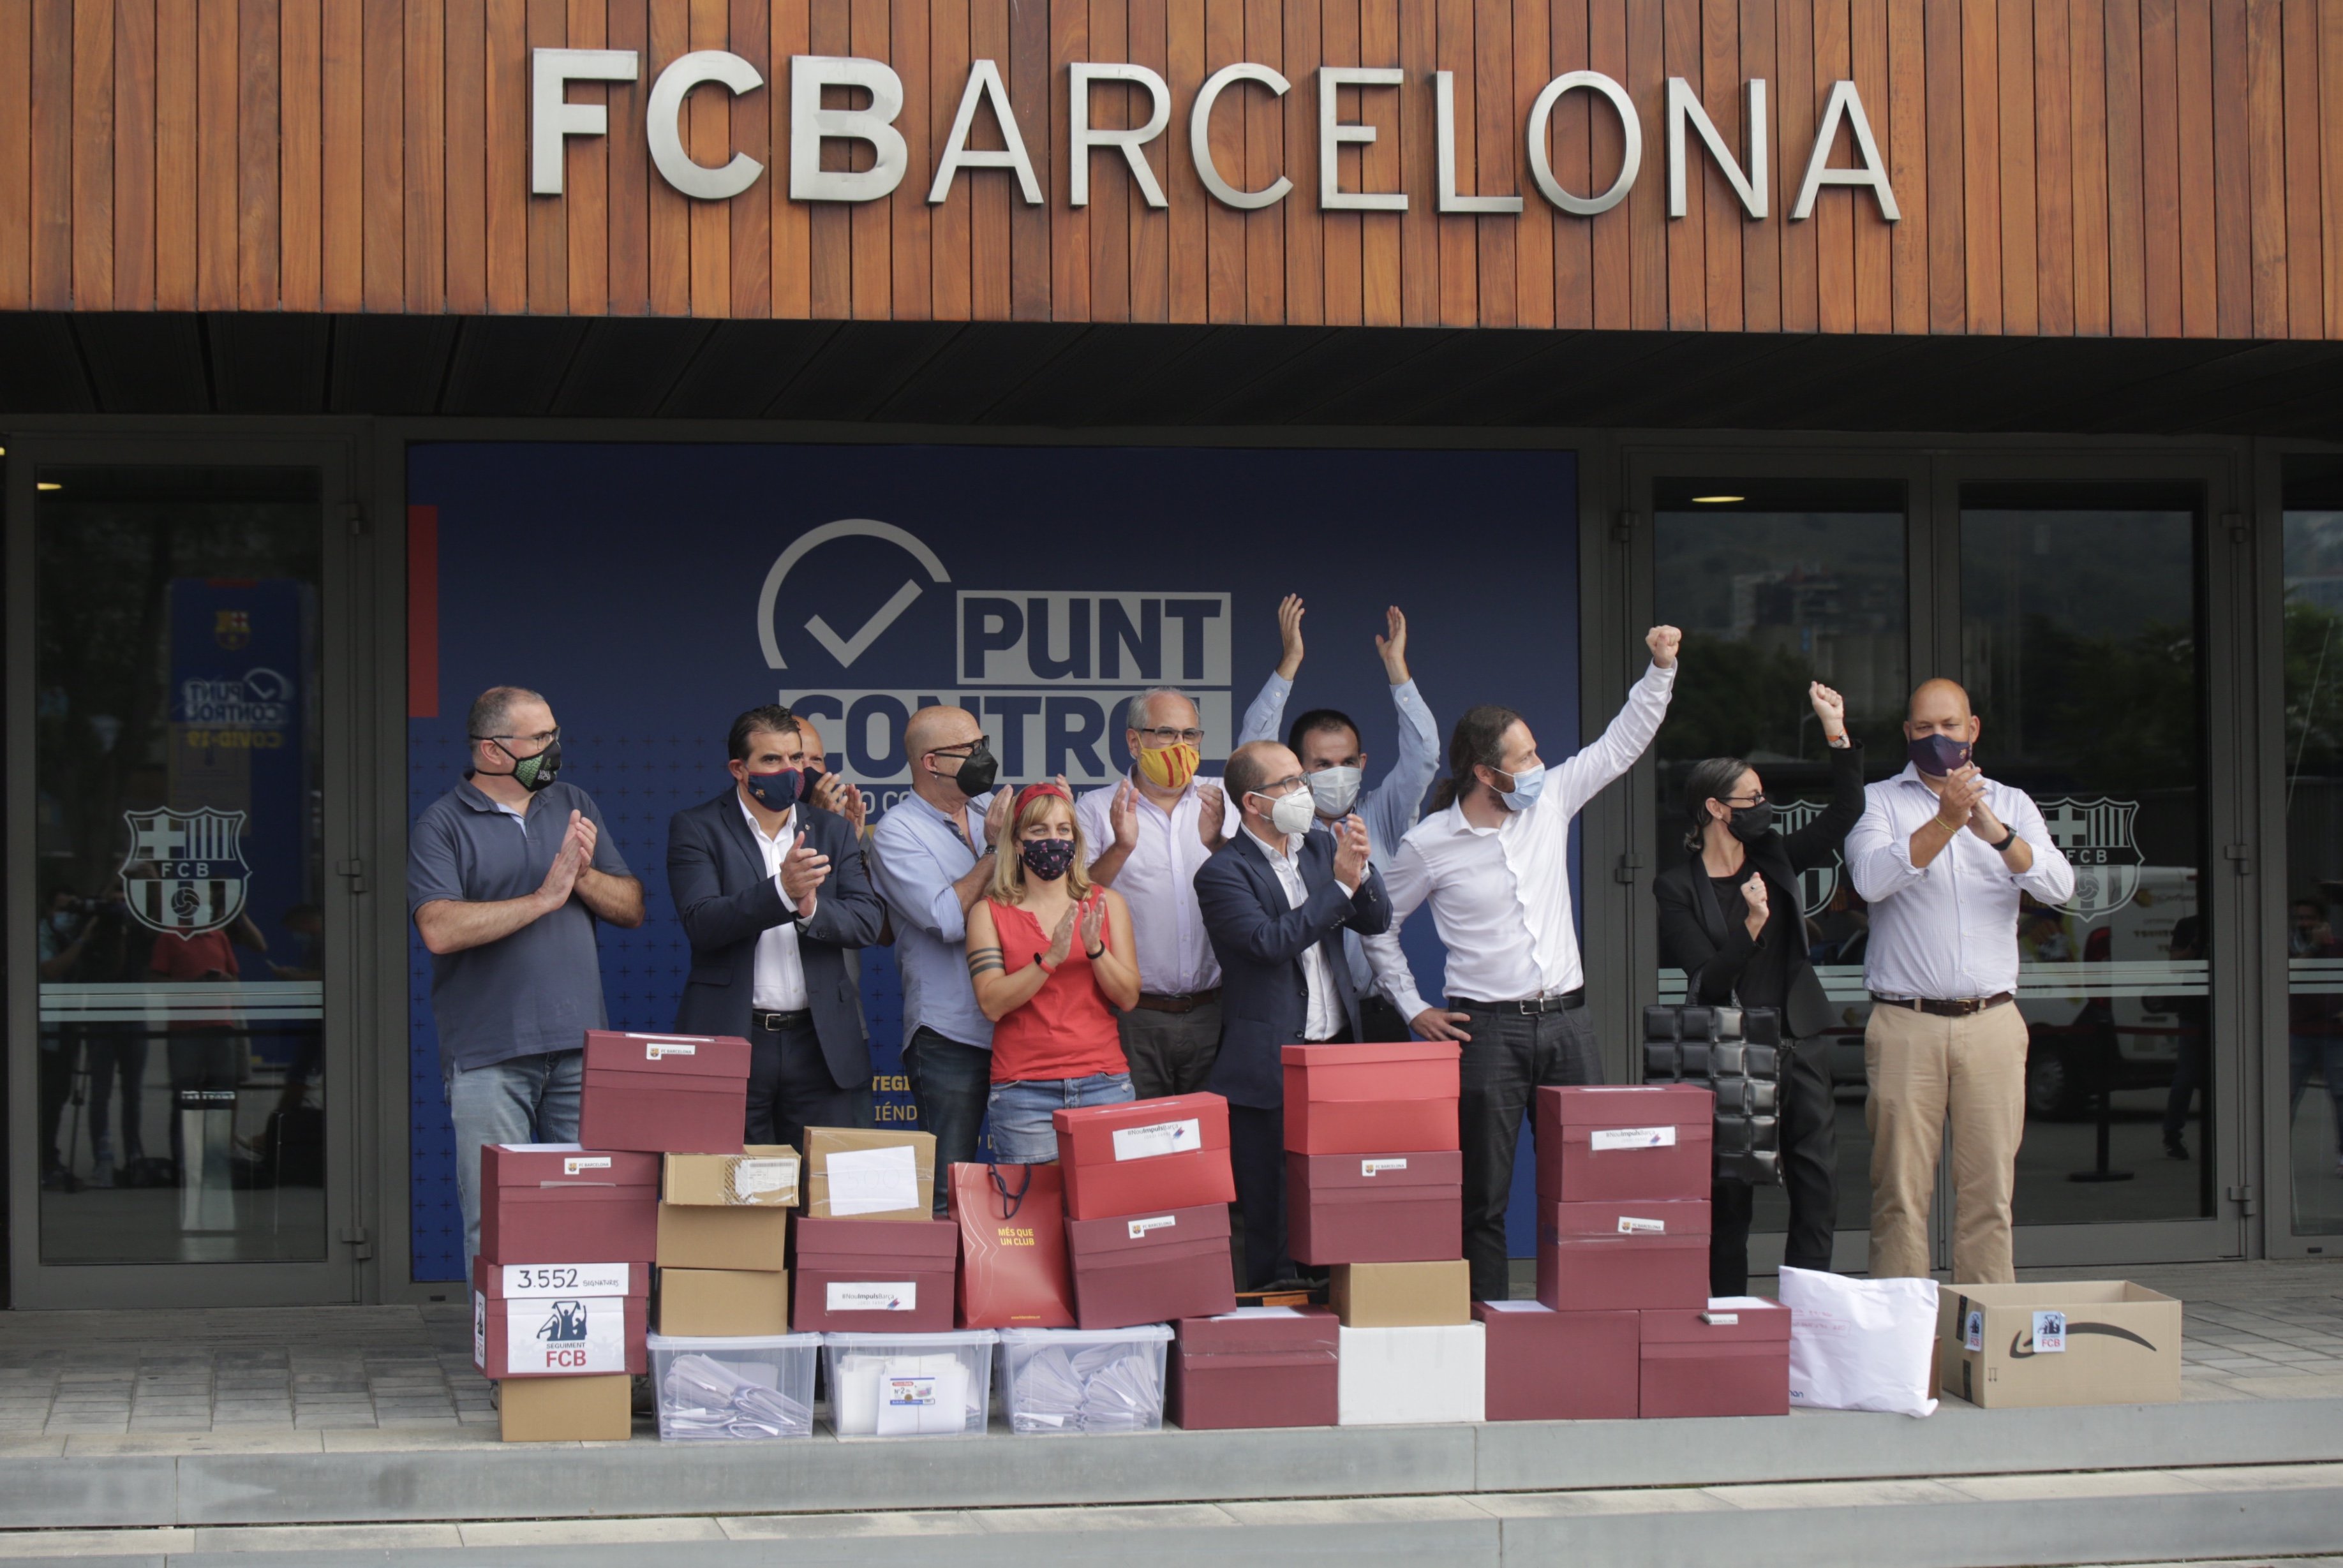 Més que una Moció exigeix "transparència" al Barça durant la validació de firmes